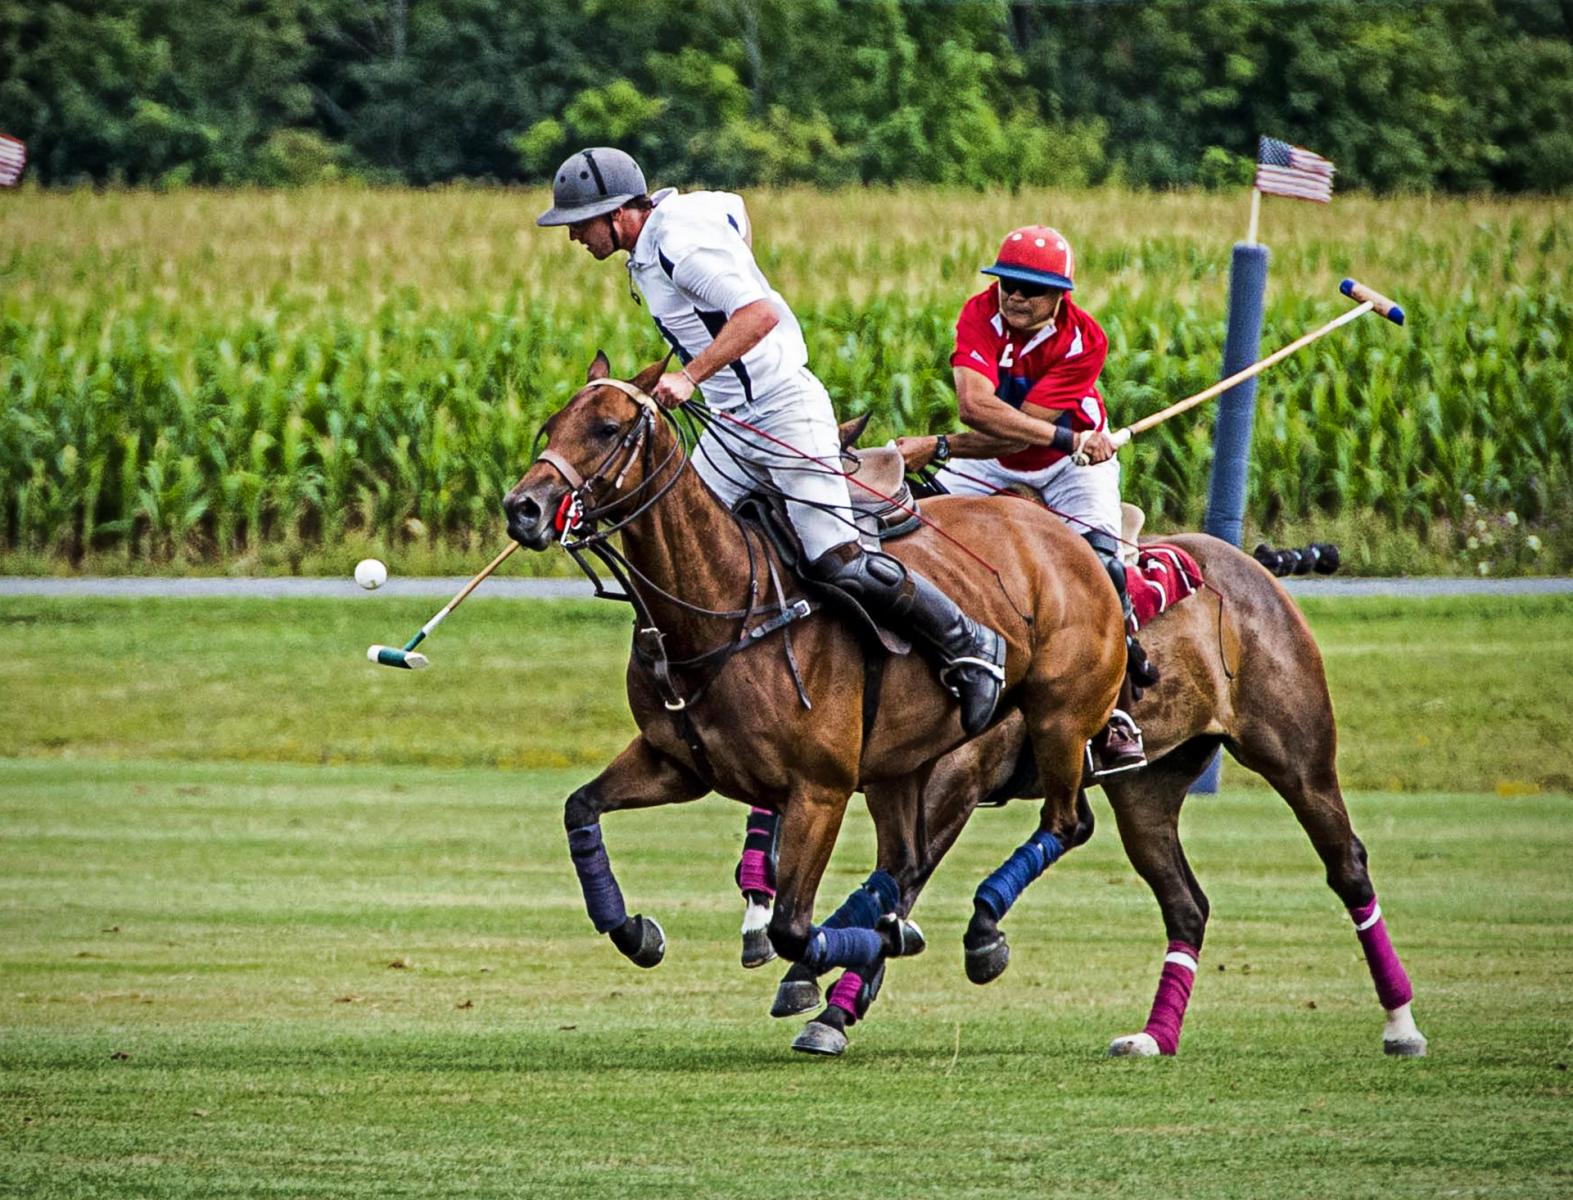 Polo_horses_sports